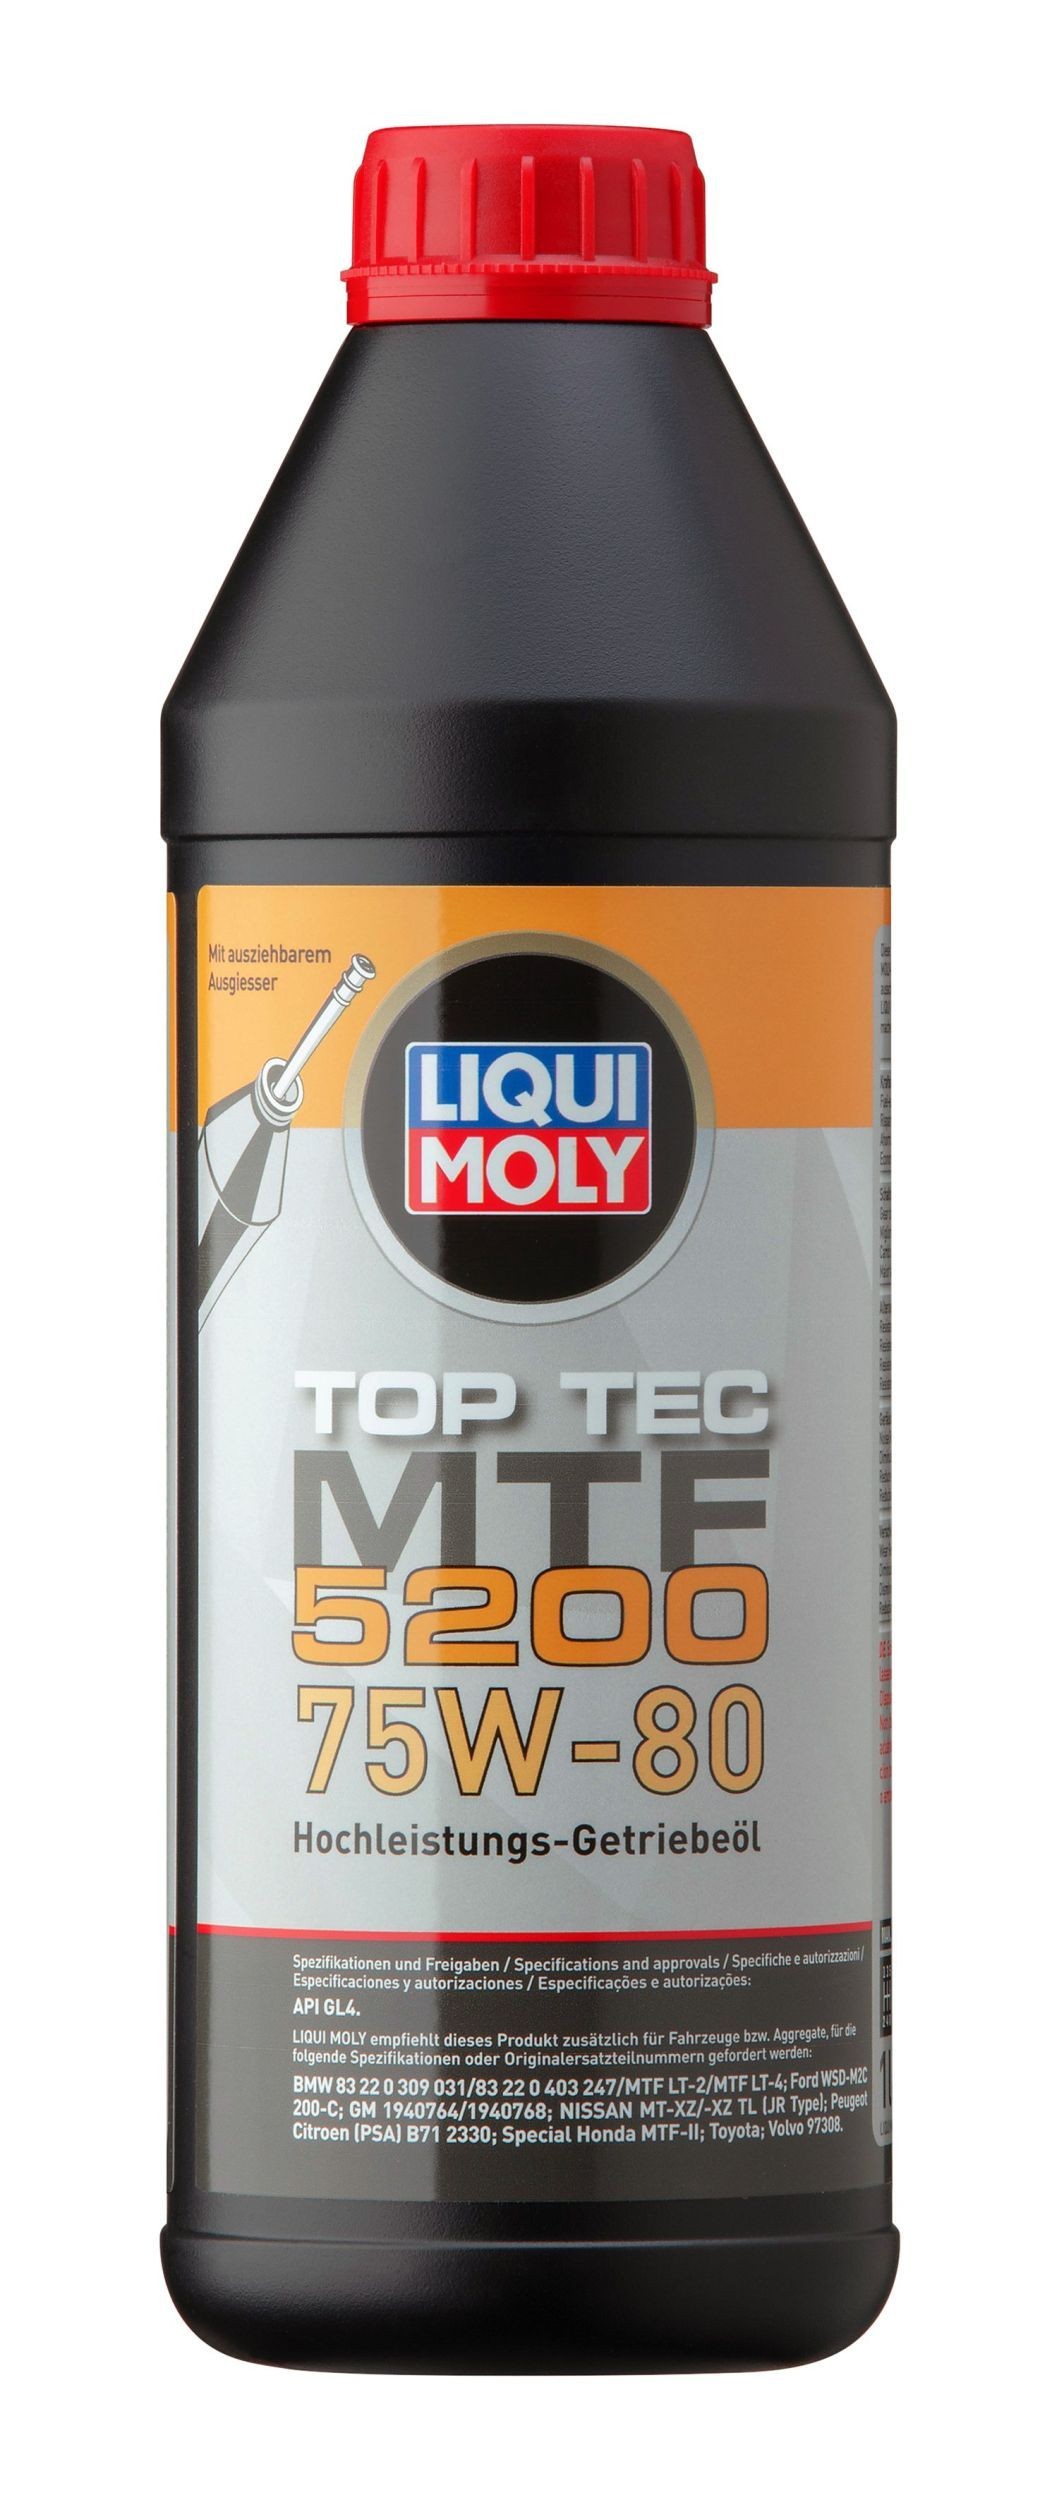 LIQUI MOLY Top Tec, MTF 5200 20845 JINLUN Getriebeöl Motorrad zum günstigen Preis